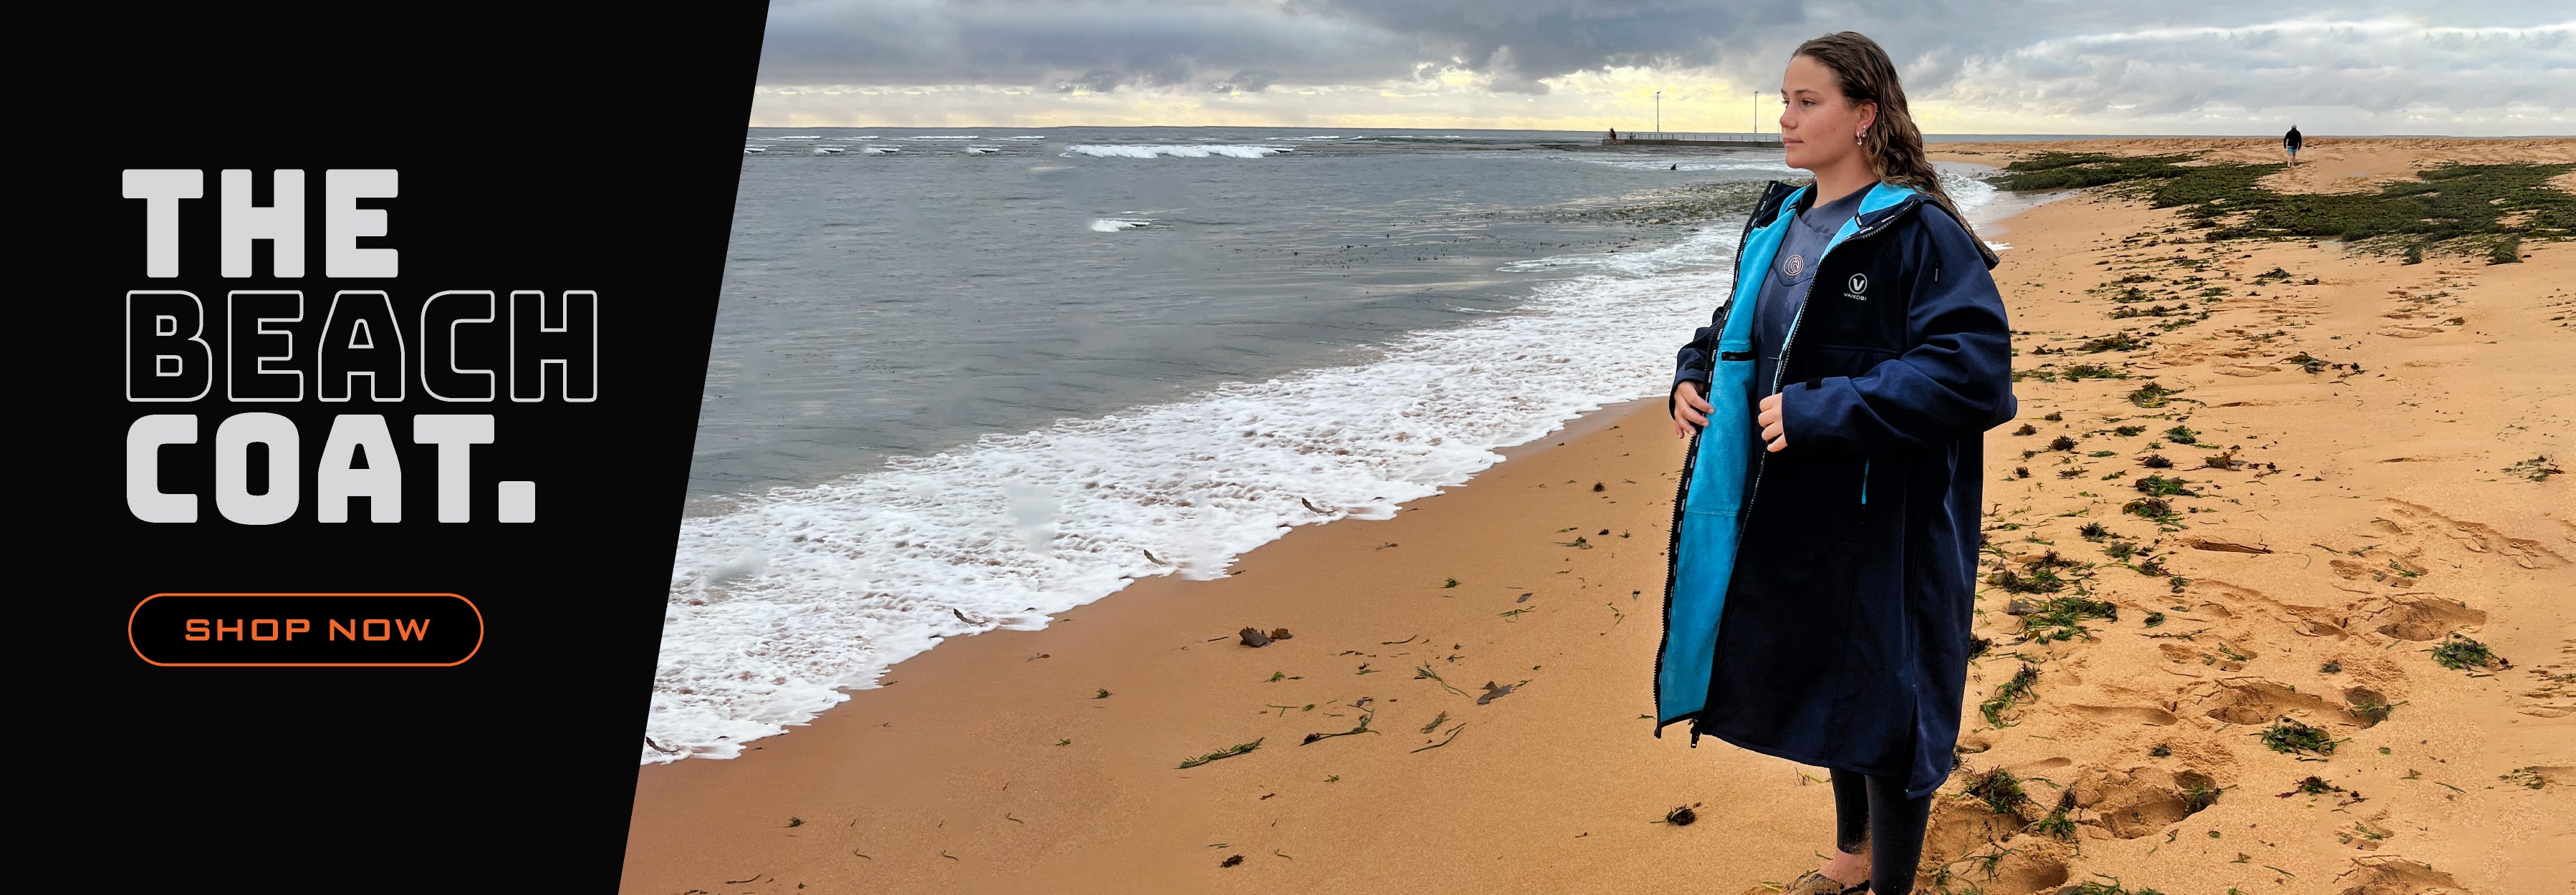 beach coat